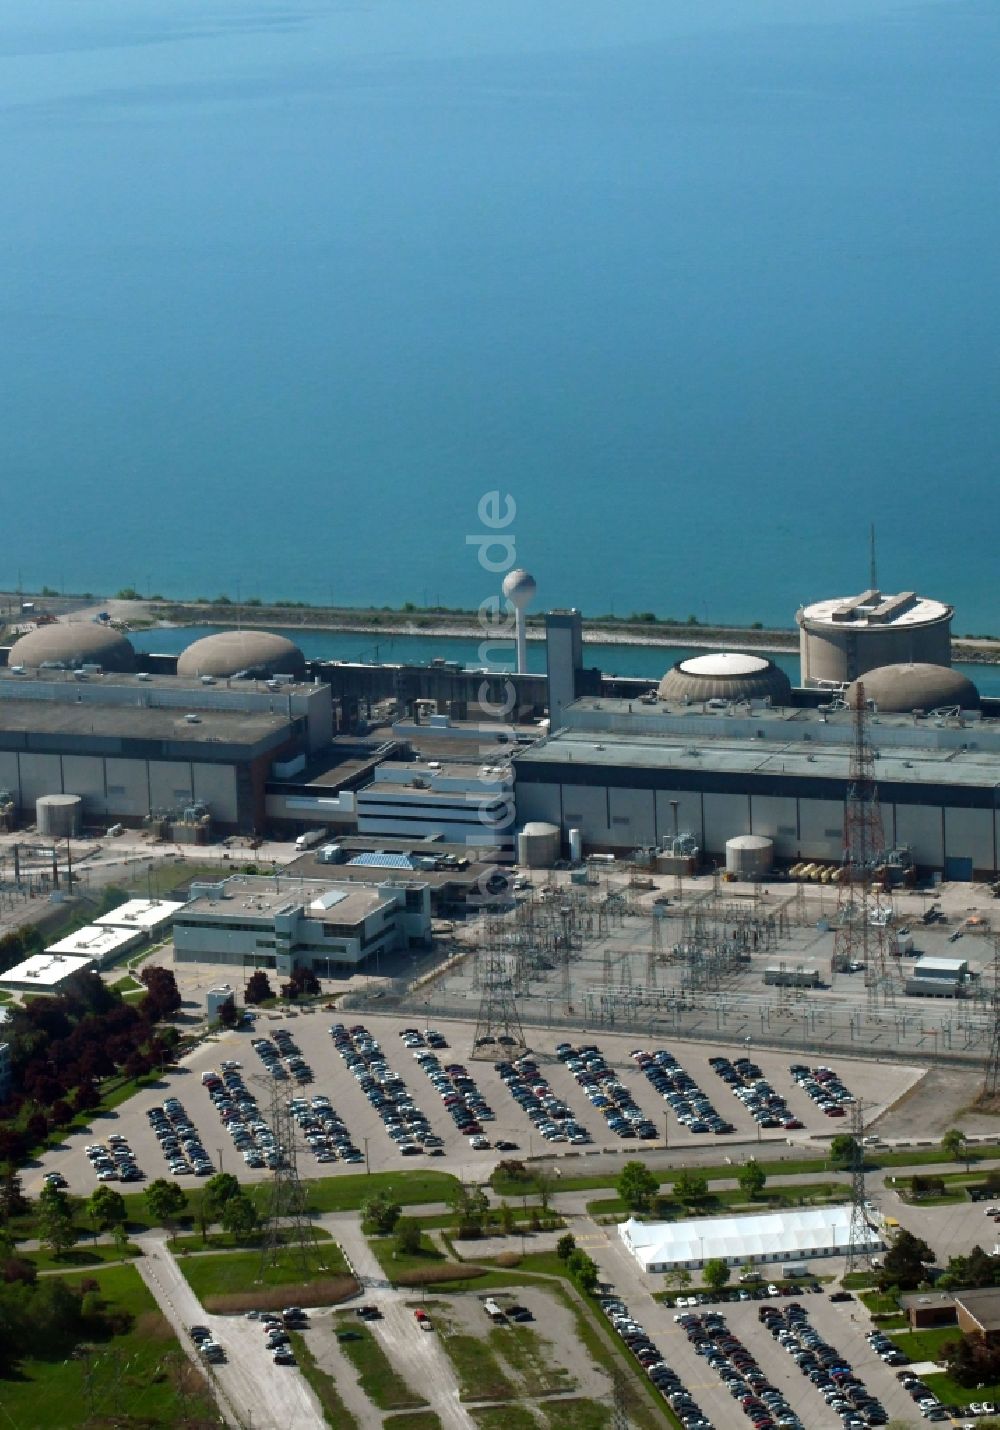 Pickering aus der Vogelperspektive: Reaktorblöcke und Anlagen des AKW - KKW Kernkraftwerk in Pickering in Ontario, Kanada